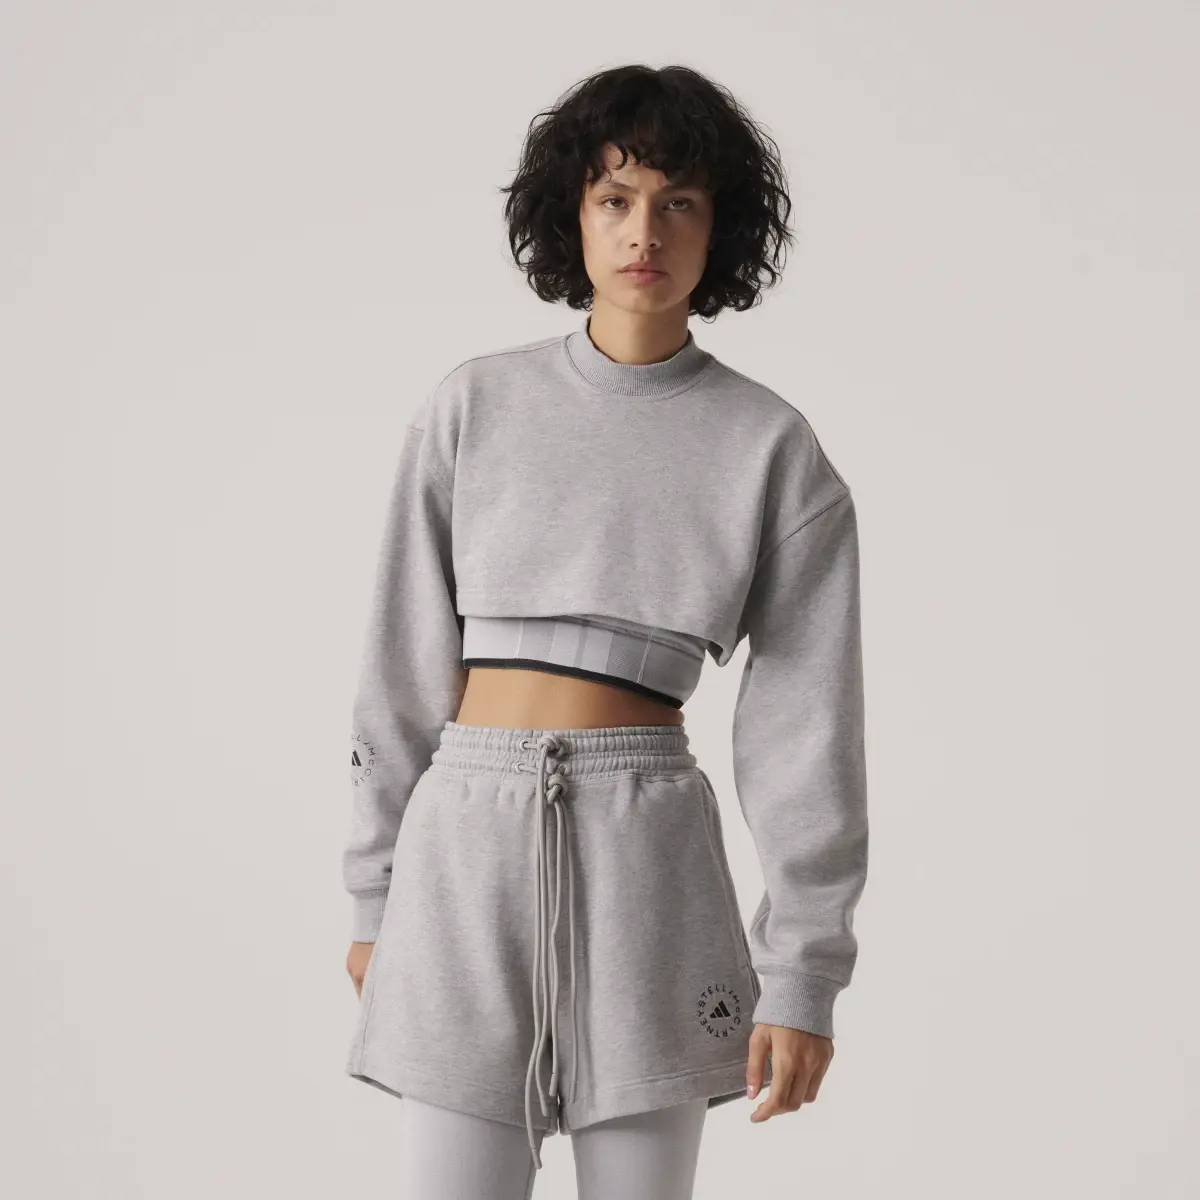 Adidas by Stella McCartney TrueCasuals Cropped Sportswear Sweatshirt. 1